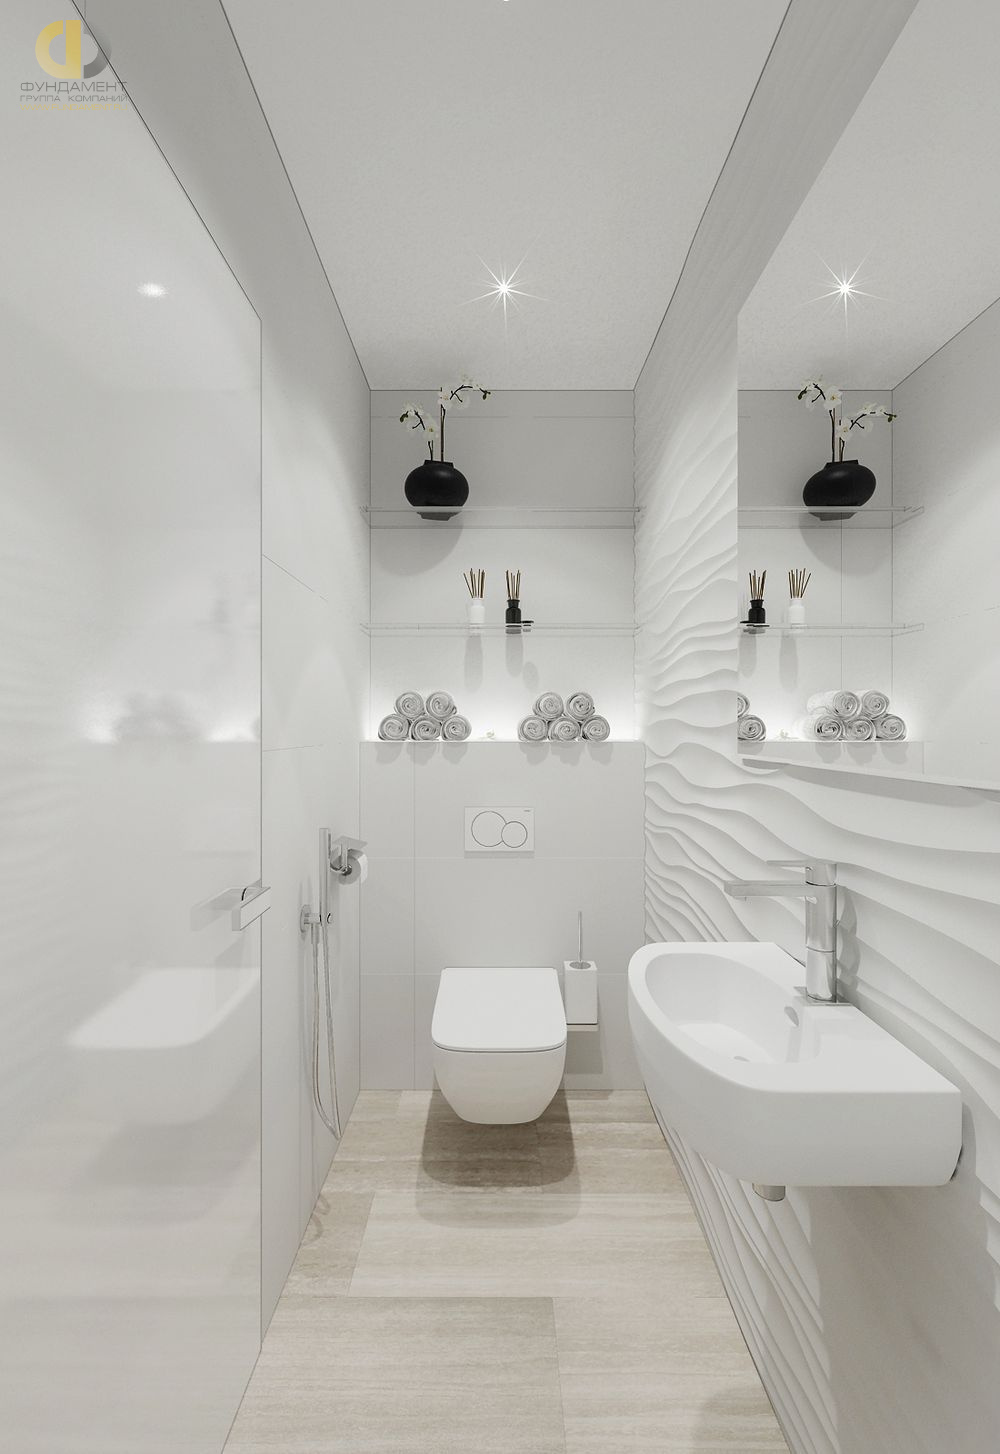 Ванная в стиле дизайна минимализм по адресу Франция, Канны, бульвар Лидер, 77, 2018 года